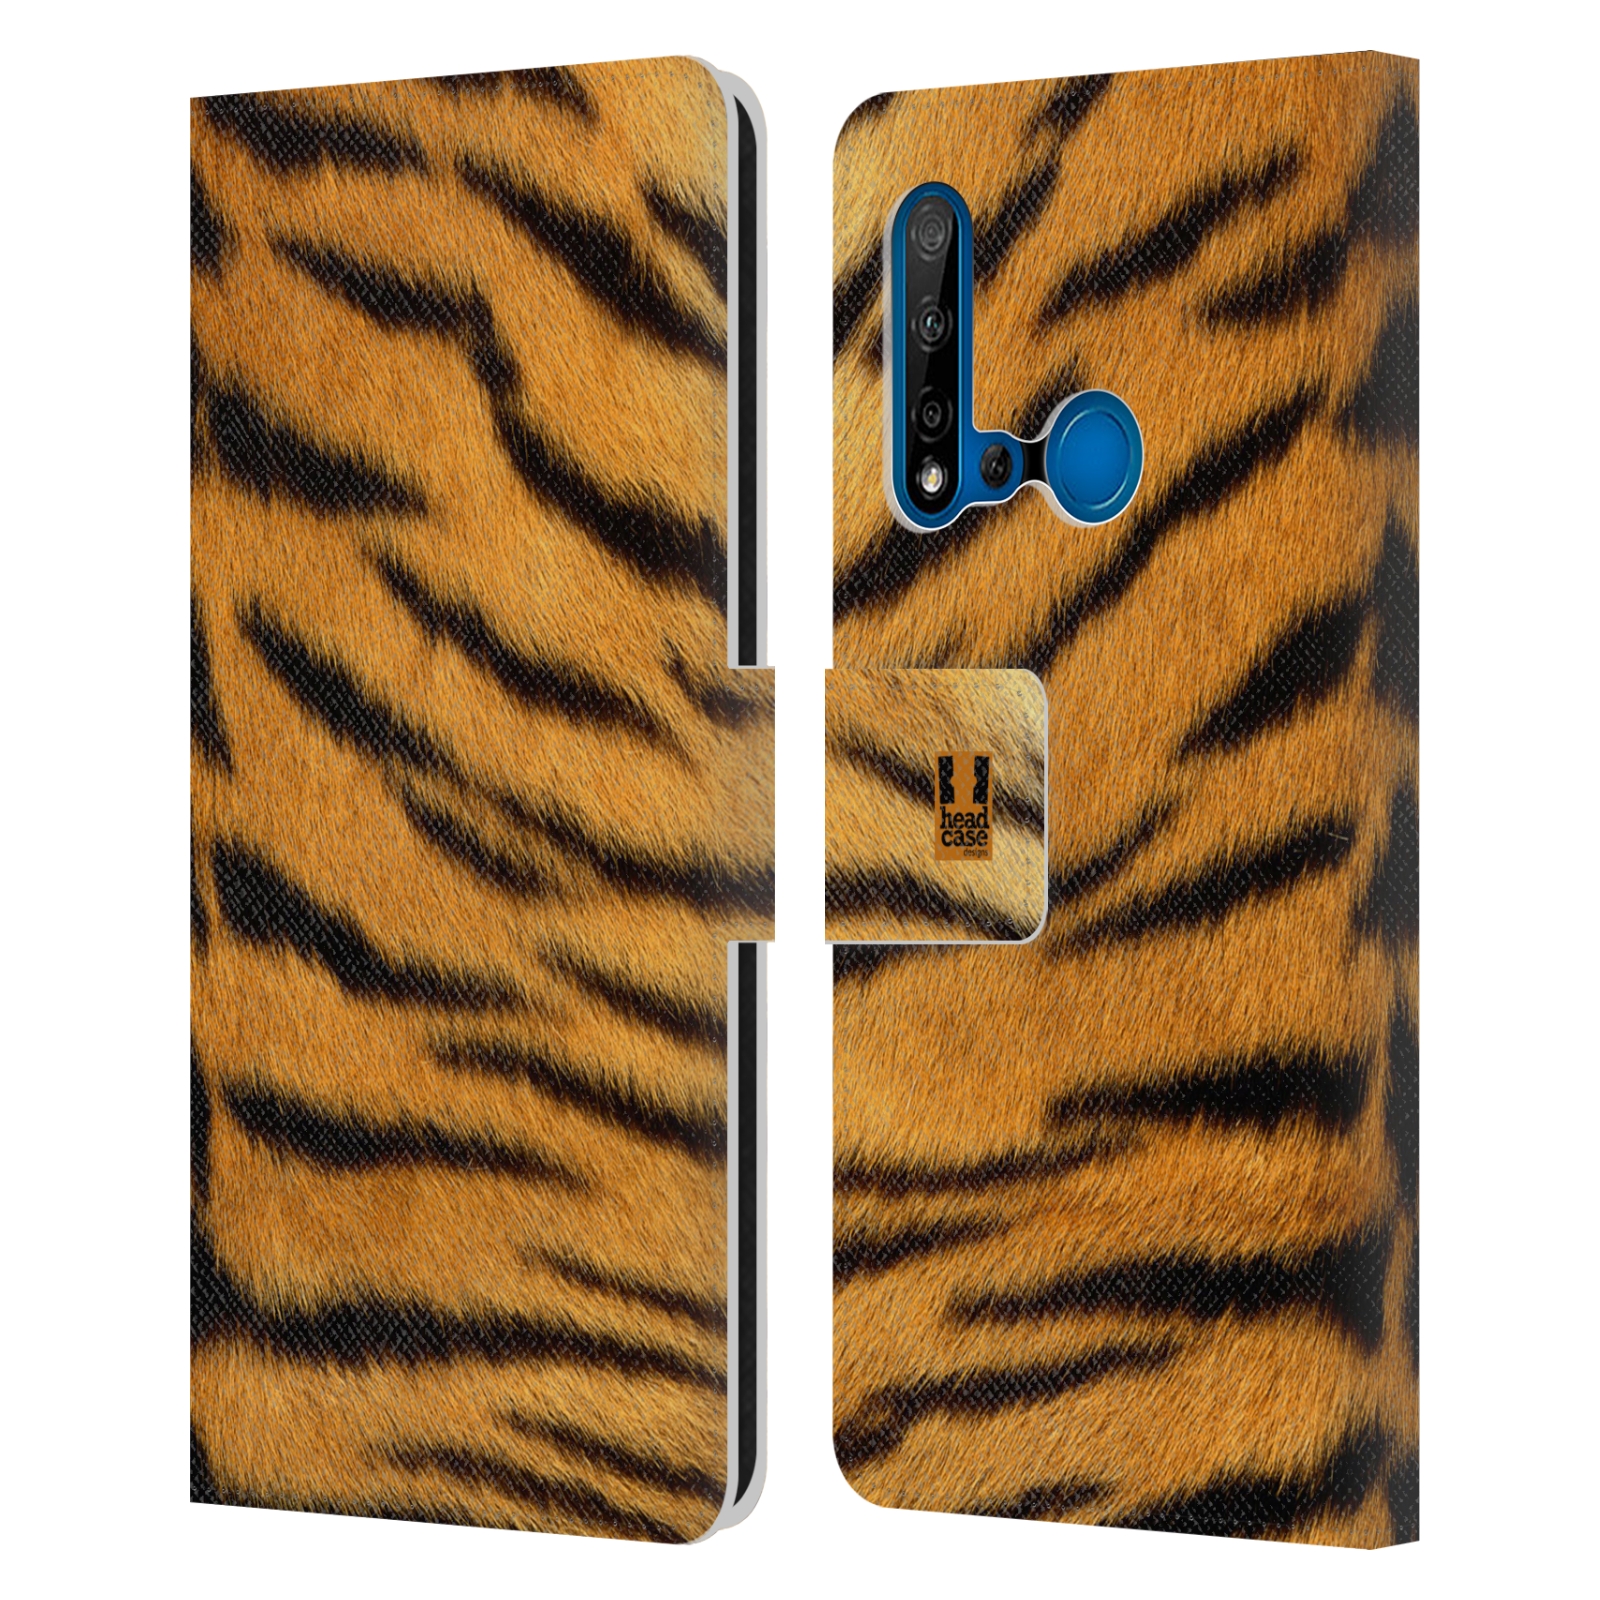 Pouzdro na mobil Huawei P20 LITE 2019 zvíře srst divoká kolekce tygr